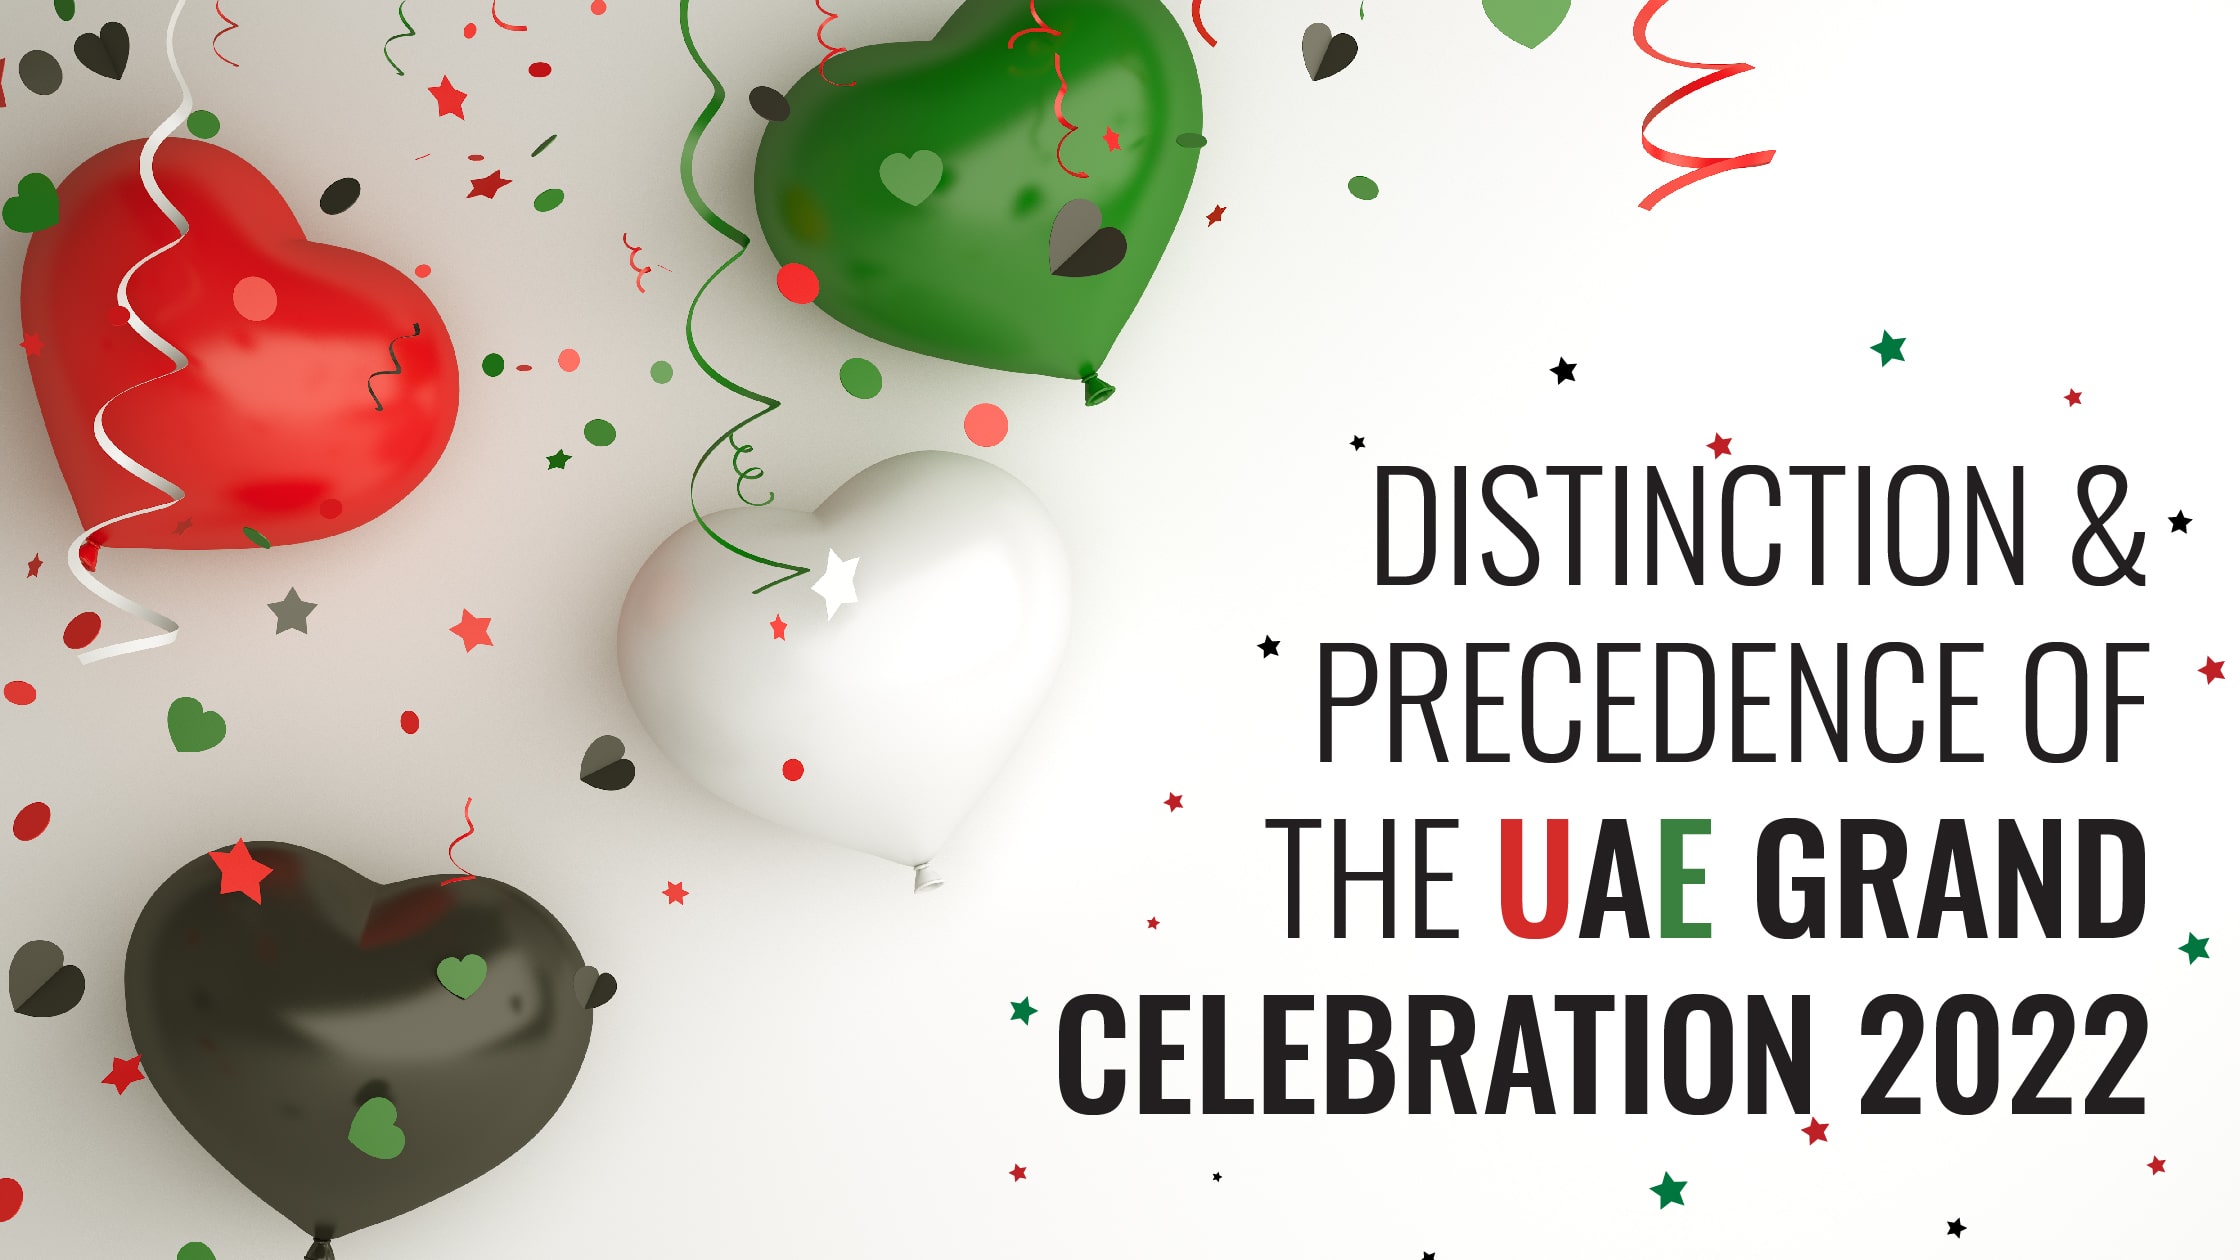 UAE National Day Celebration